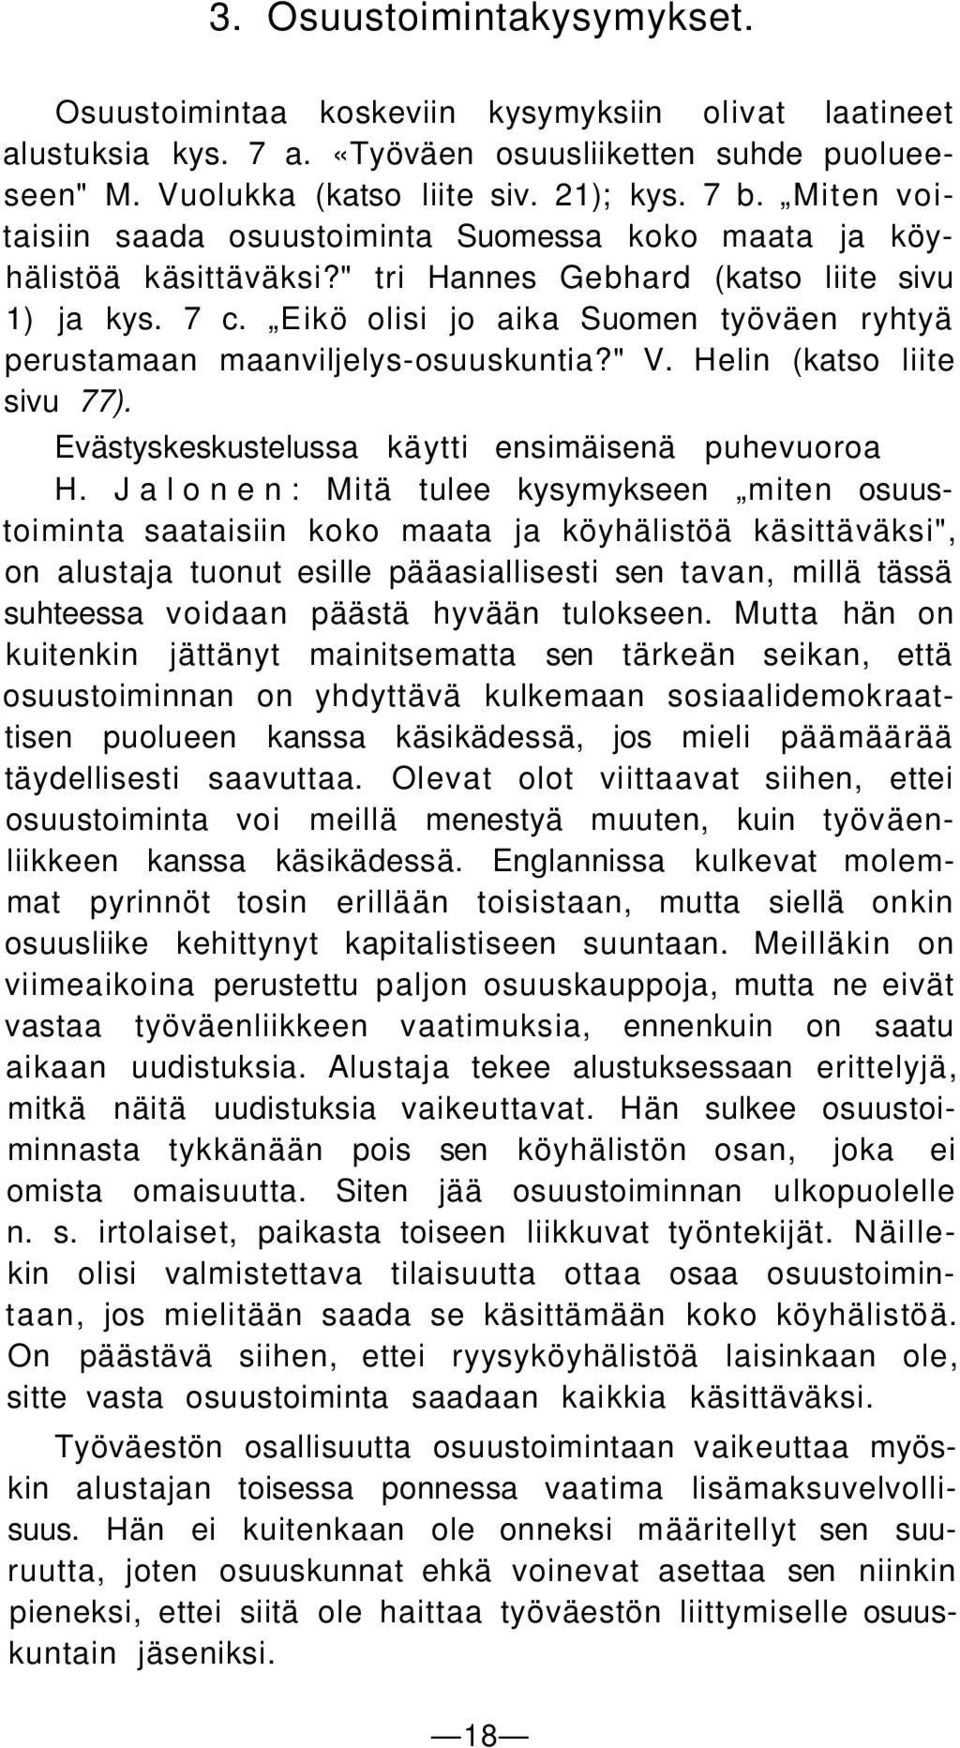 Eikö olisi jo aika Suomen työväen ryhtyä perustamaan maanviljelys-osuuskuntia?" V. Helin (katso liite sivu 77). Evästyskeskustelussa käytti ensimäisenä puhevuoroa H.